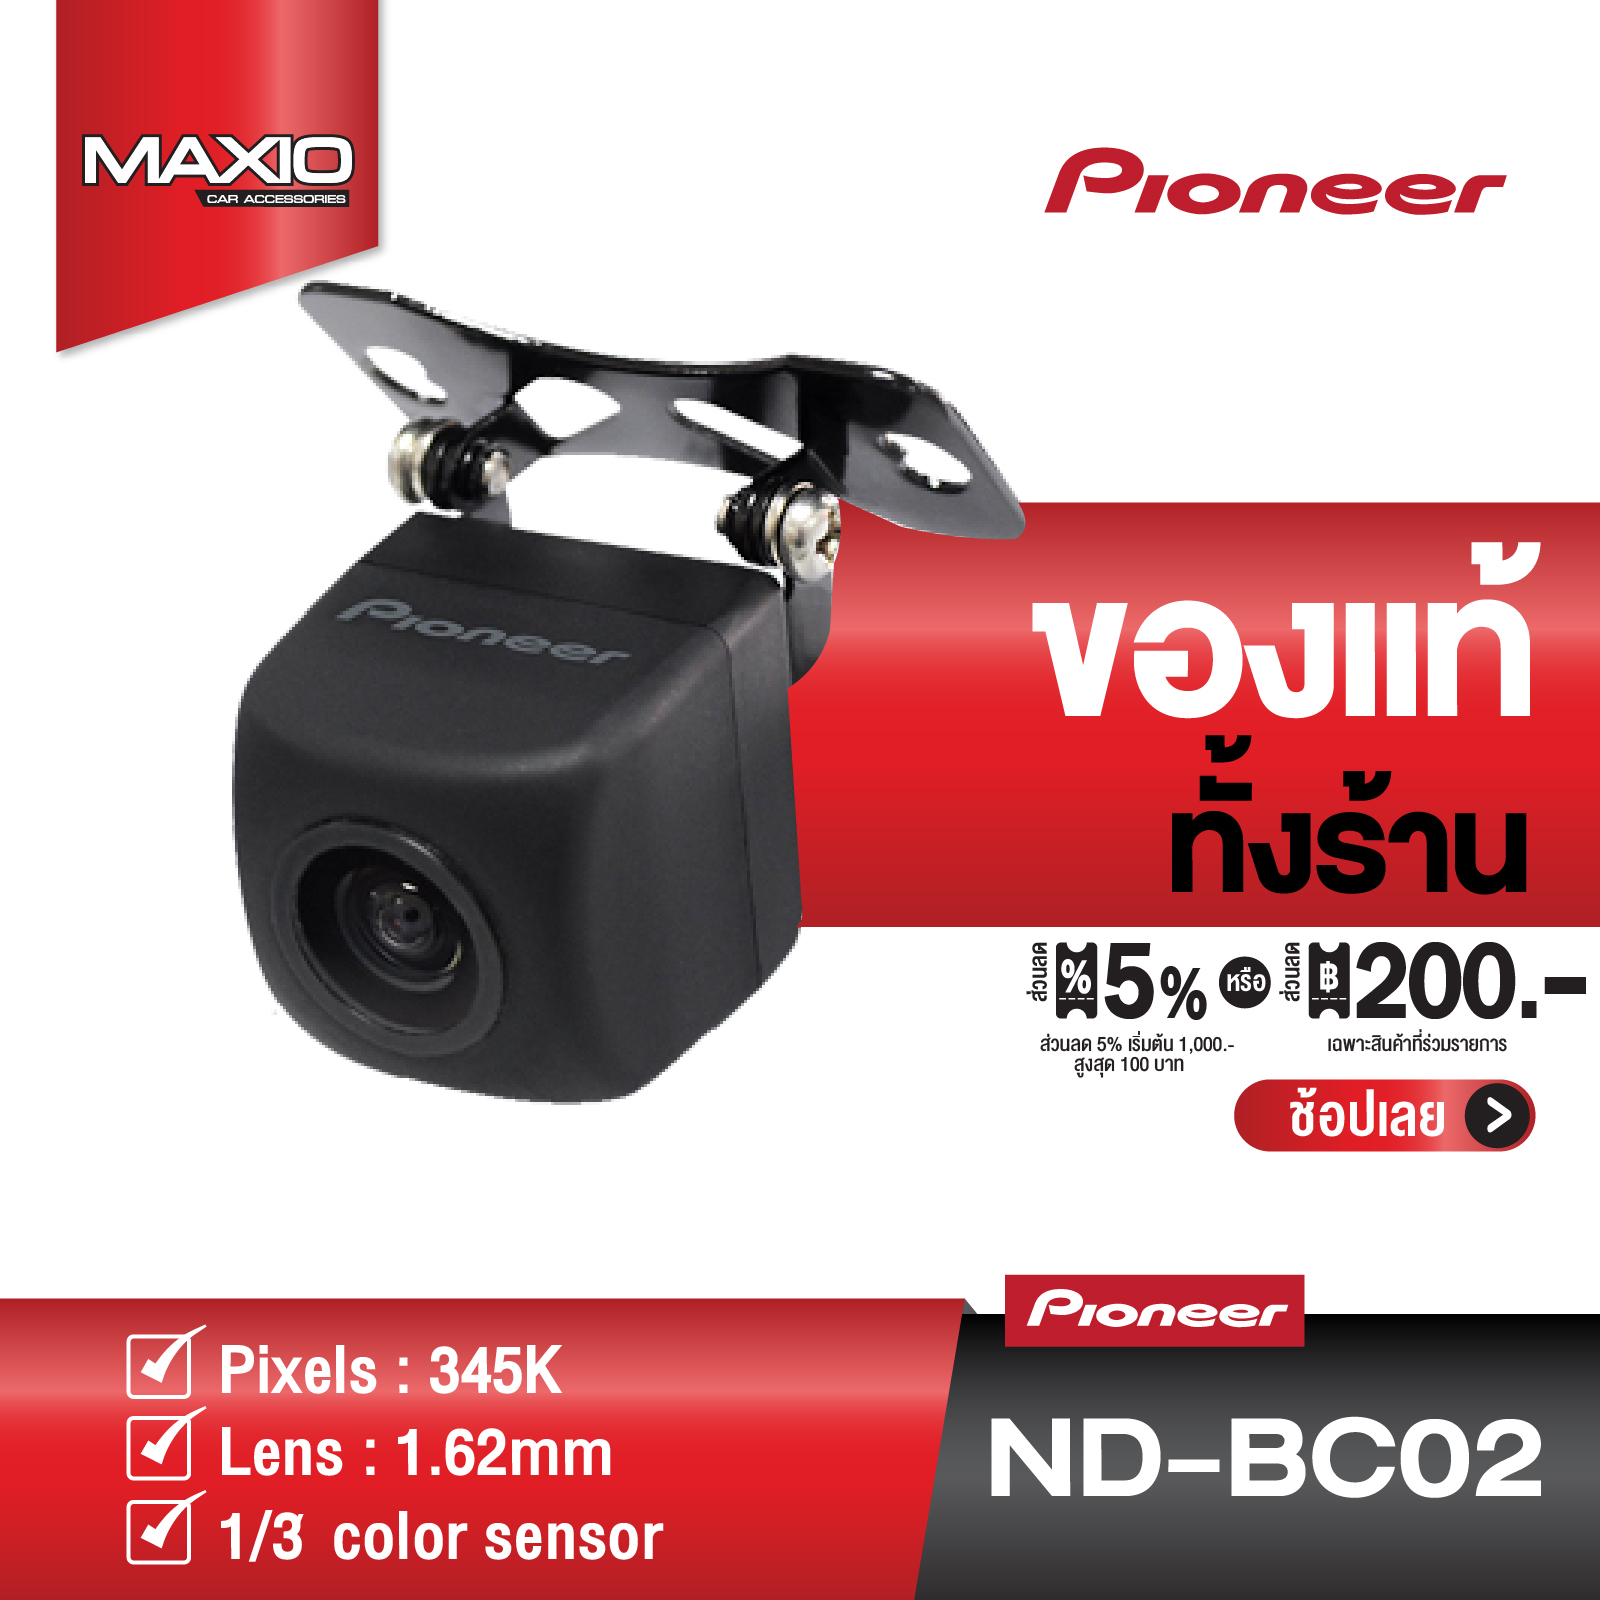 PIONEER ND-BC02 กล้องมองถอยหลังติดรถยนต์ REAR VIEW CAMERA กันน้ำ กันฝุ่น มุมมองกลางคืนชัดเจนแม้ในที่แสงน้อย